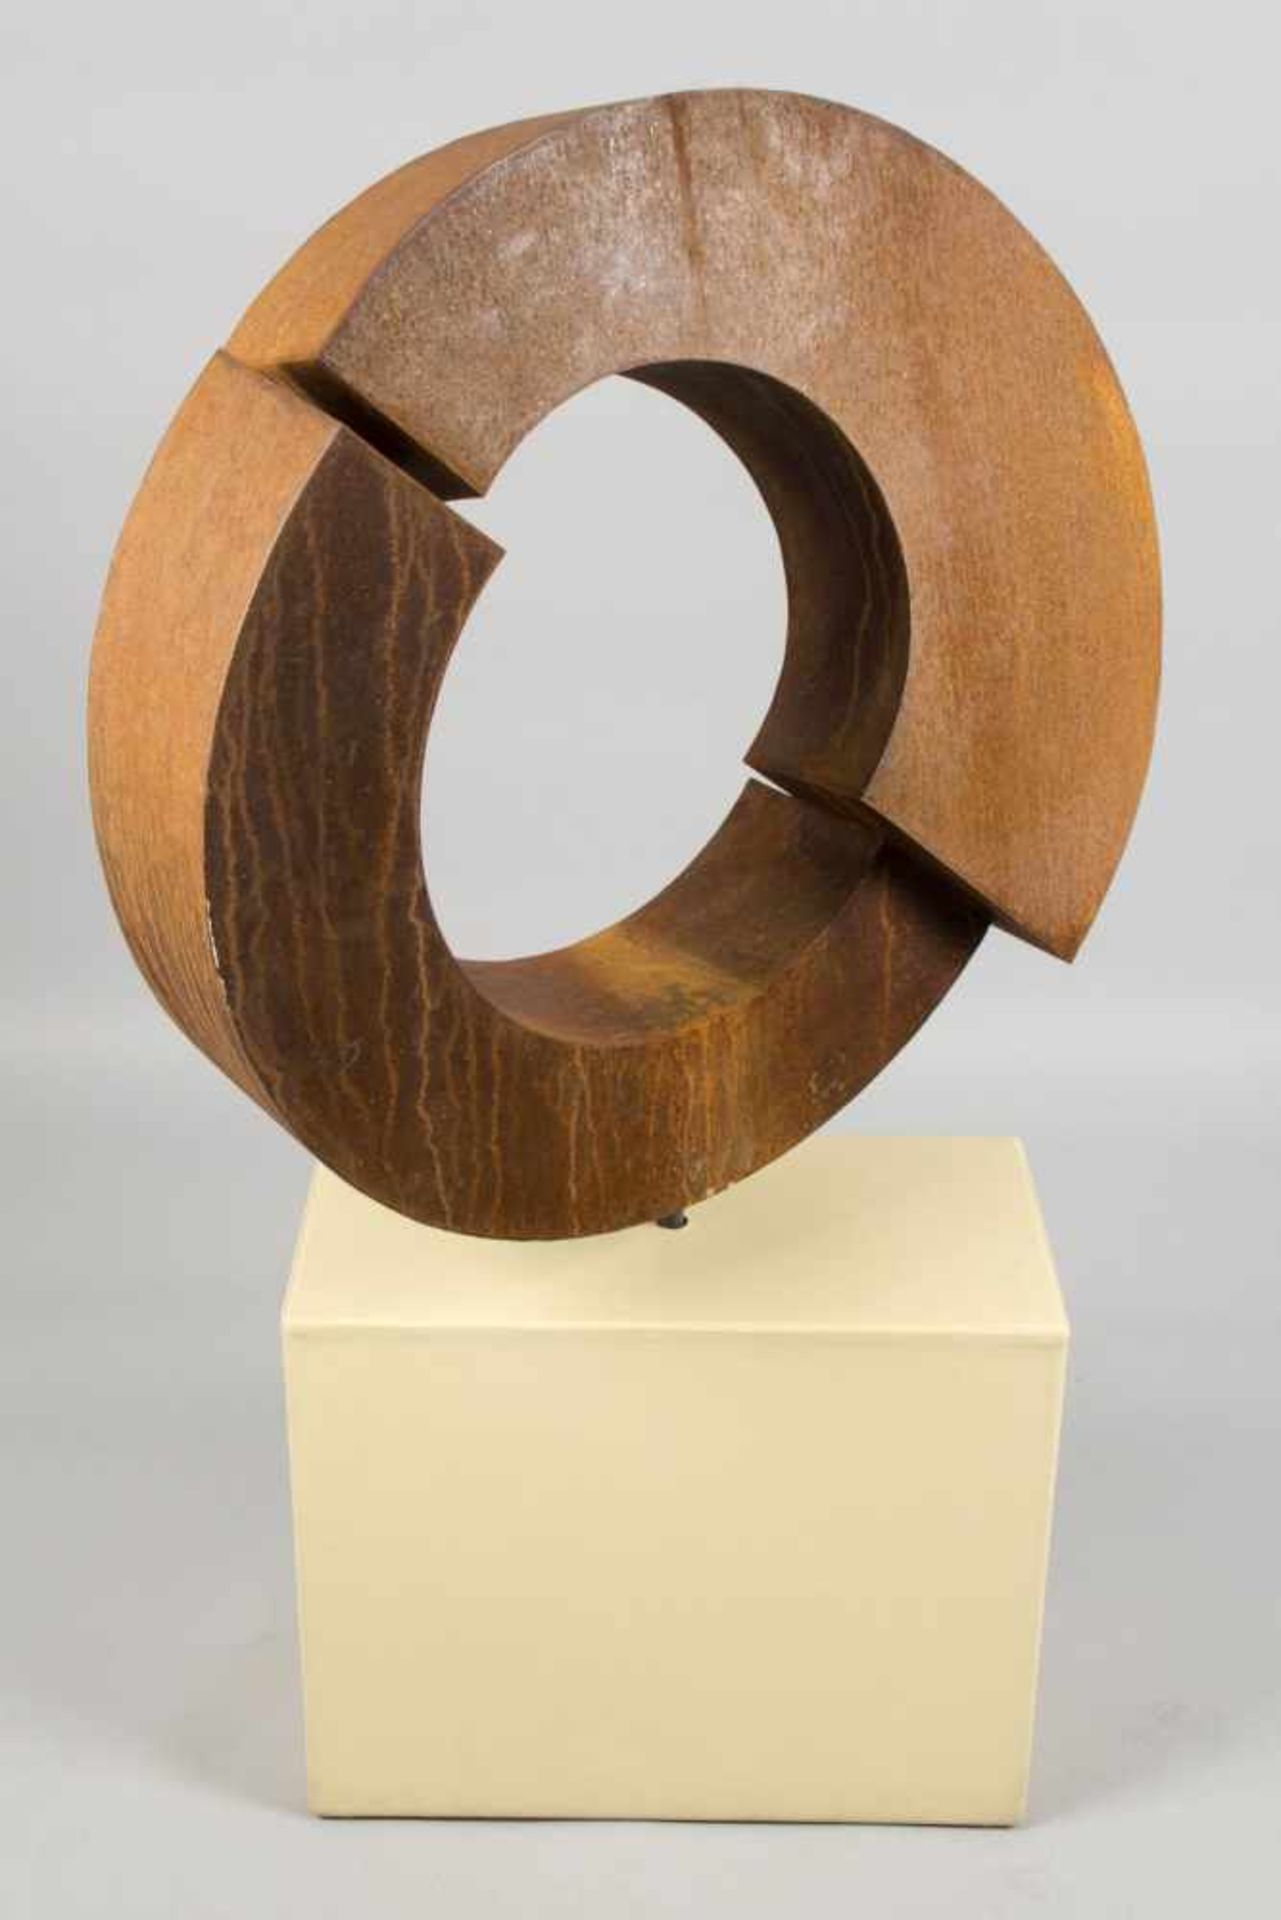 Unbekannt, 20. Jh.Aufgeschnittener Kreis. Skulptur aus korrodiertem Eisen. 81 x 85 cm. Die - Bild 6 aus 8